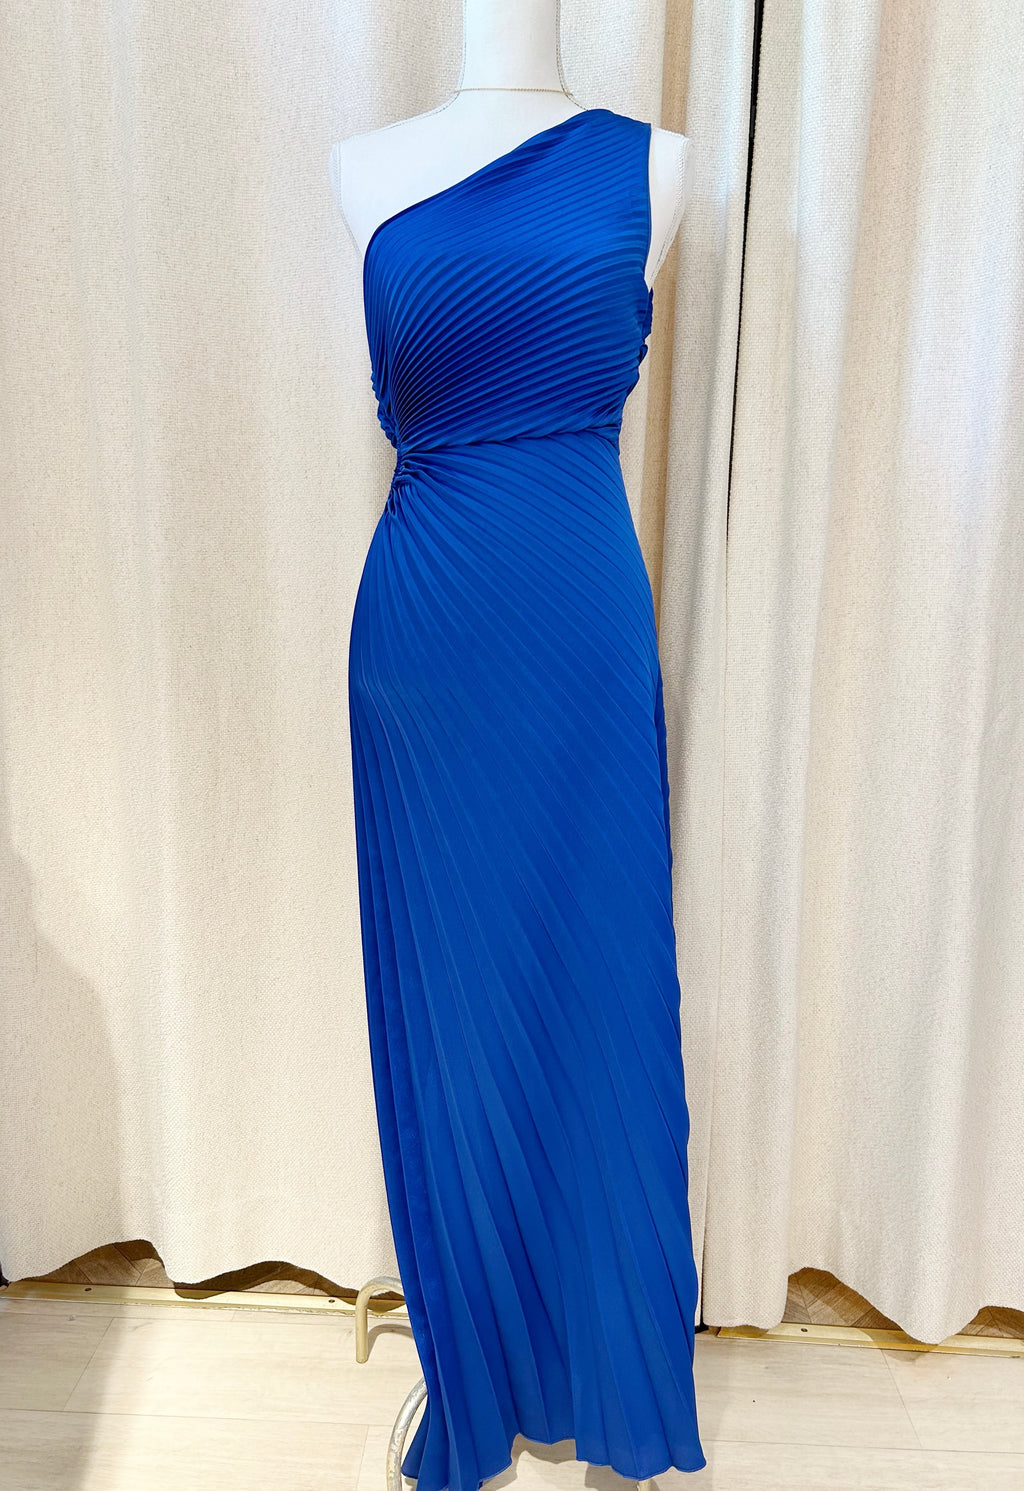 Luzabelle blue dress 💙